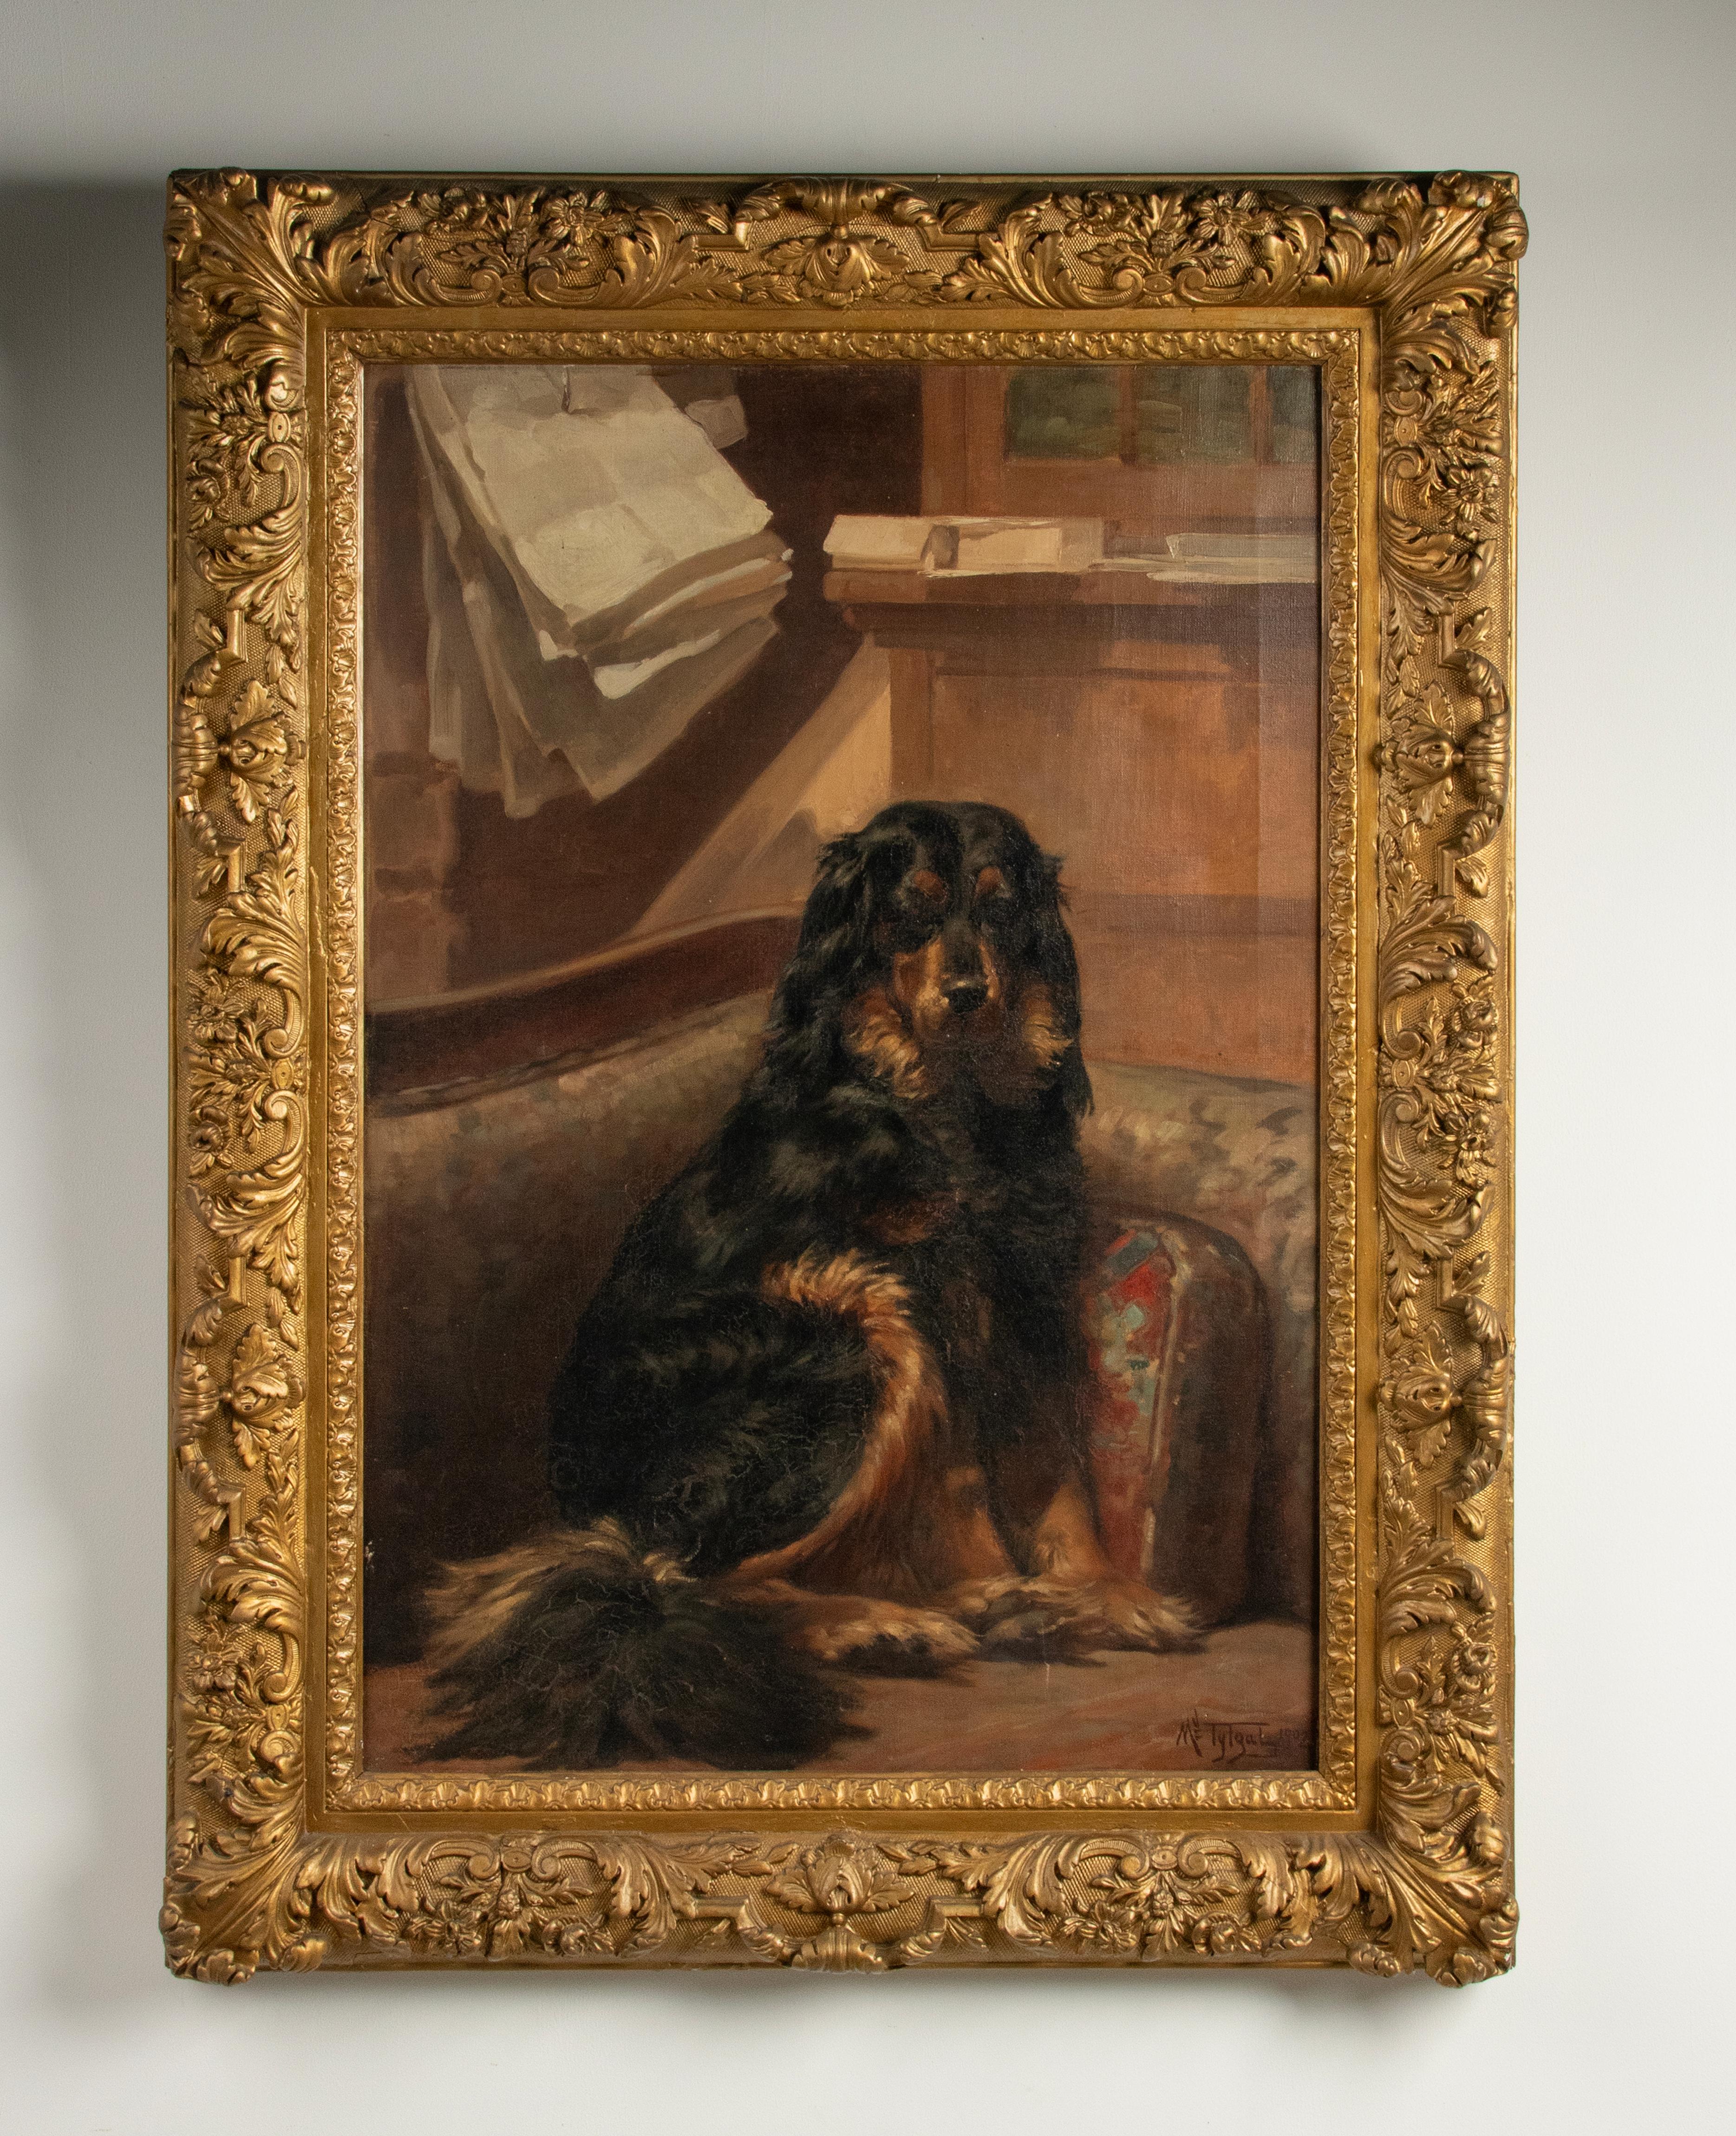 Ein schönes antikes Hundeporträt eines Gordon Setters.
Das Gemälde ist 1902 datiert und von Médard Tytgat signiert.
Es ist eine schöne Szene, der Hund posiert ruhig und freundlich, in einer gemütlichen Umgebung. Der Hund hat einen schönen